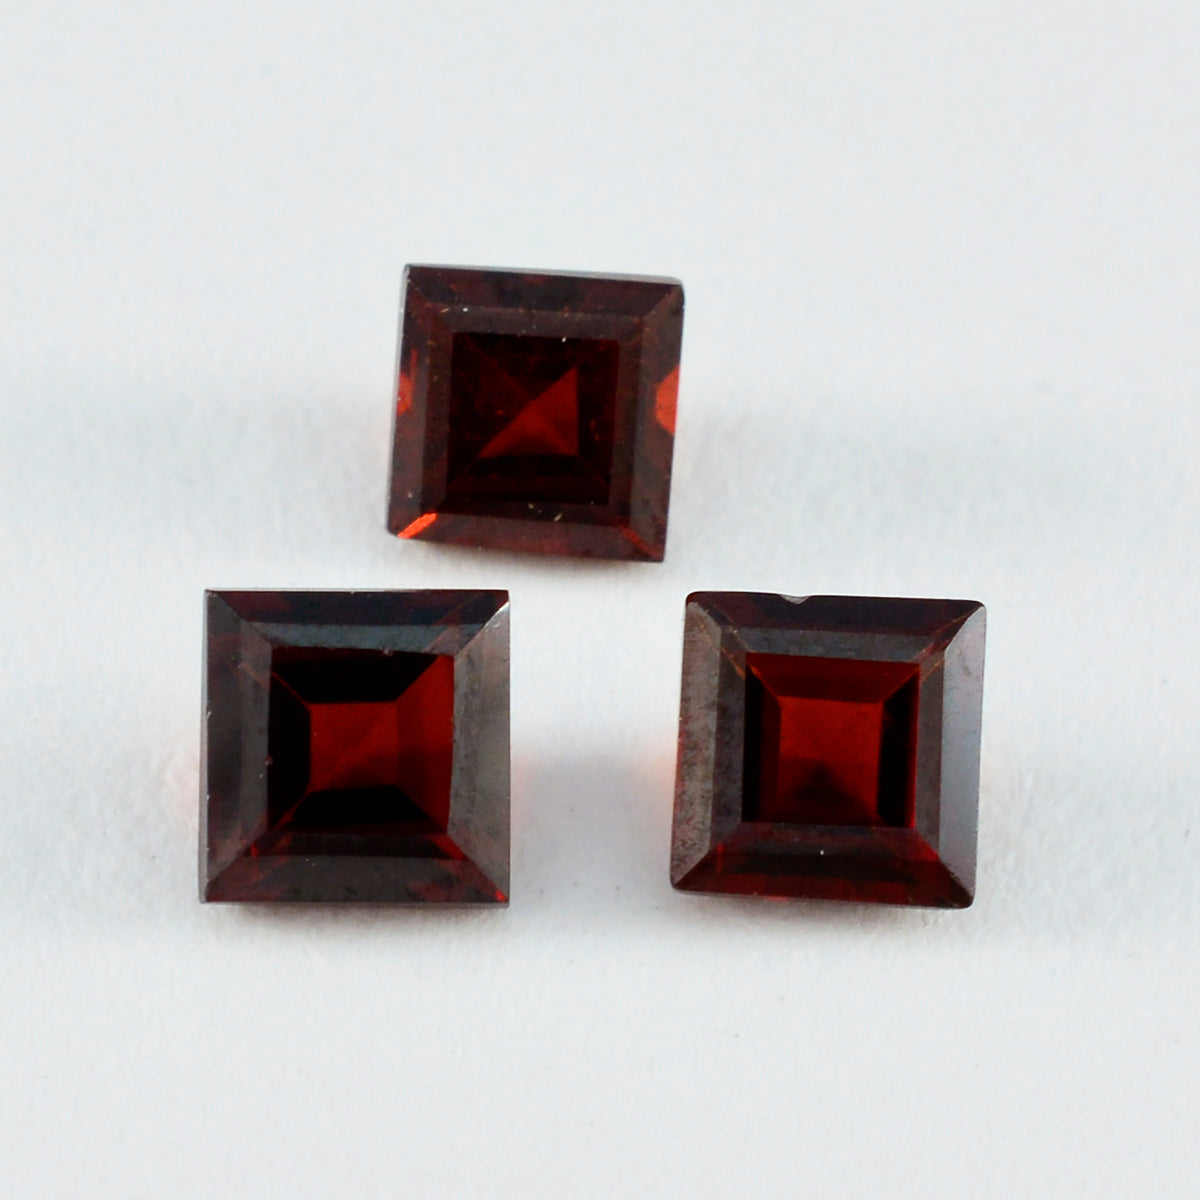 Riyogems 1PC natuurlijke rode granaat gefacetteerd 13x13 mm vierkante vorm mooie kwaliteitsedelsteen